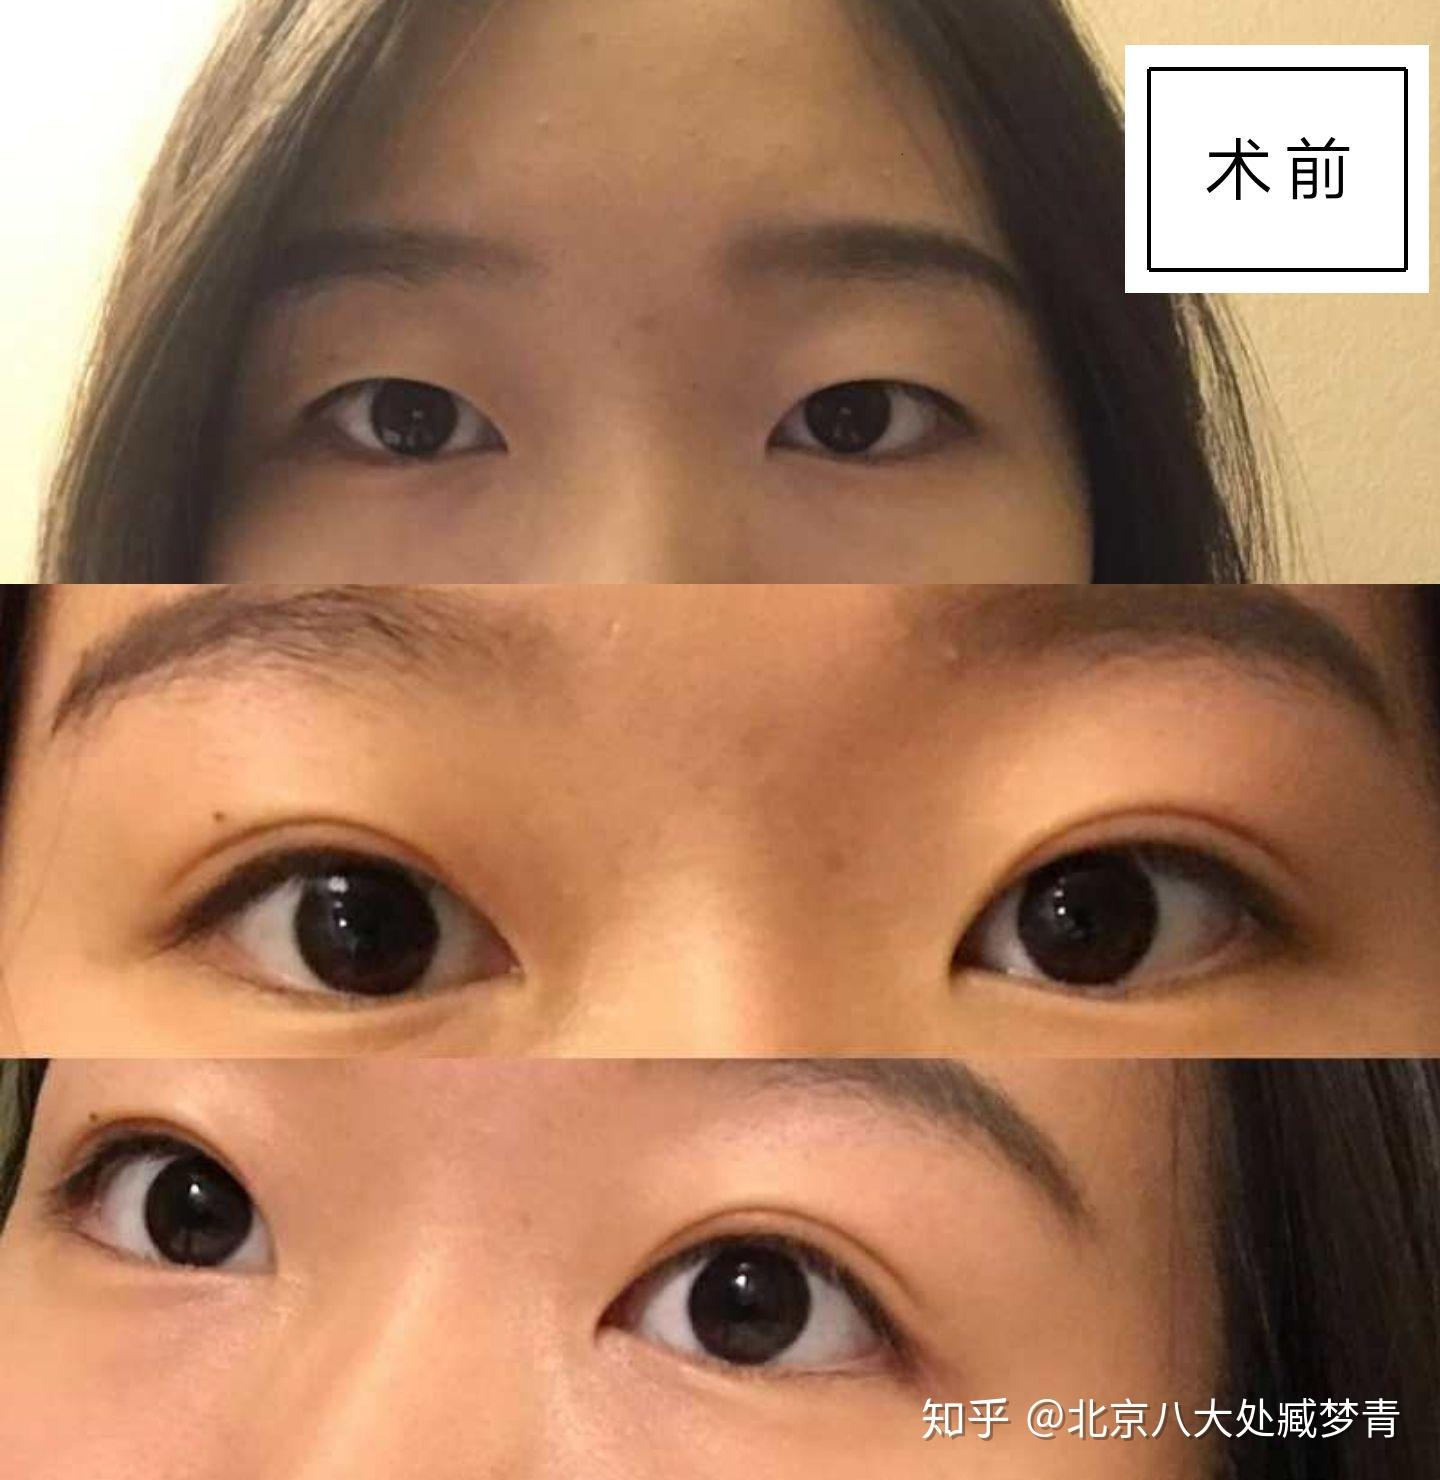 双眼皮都分为哪几种形状？